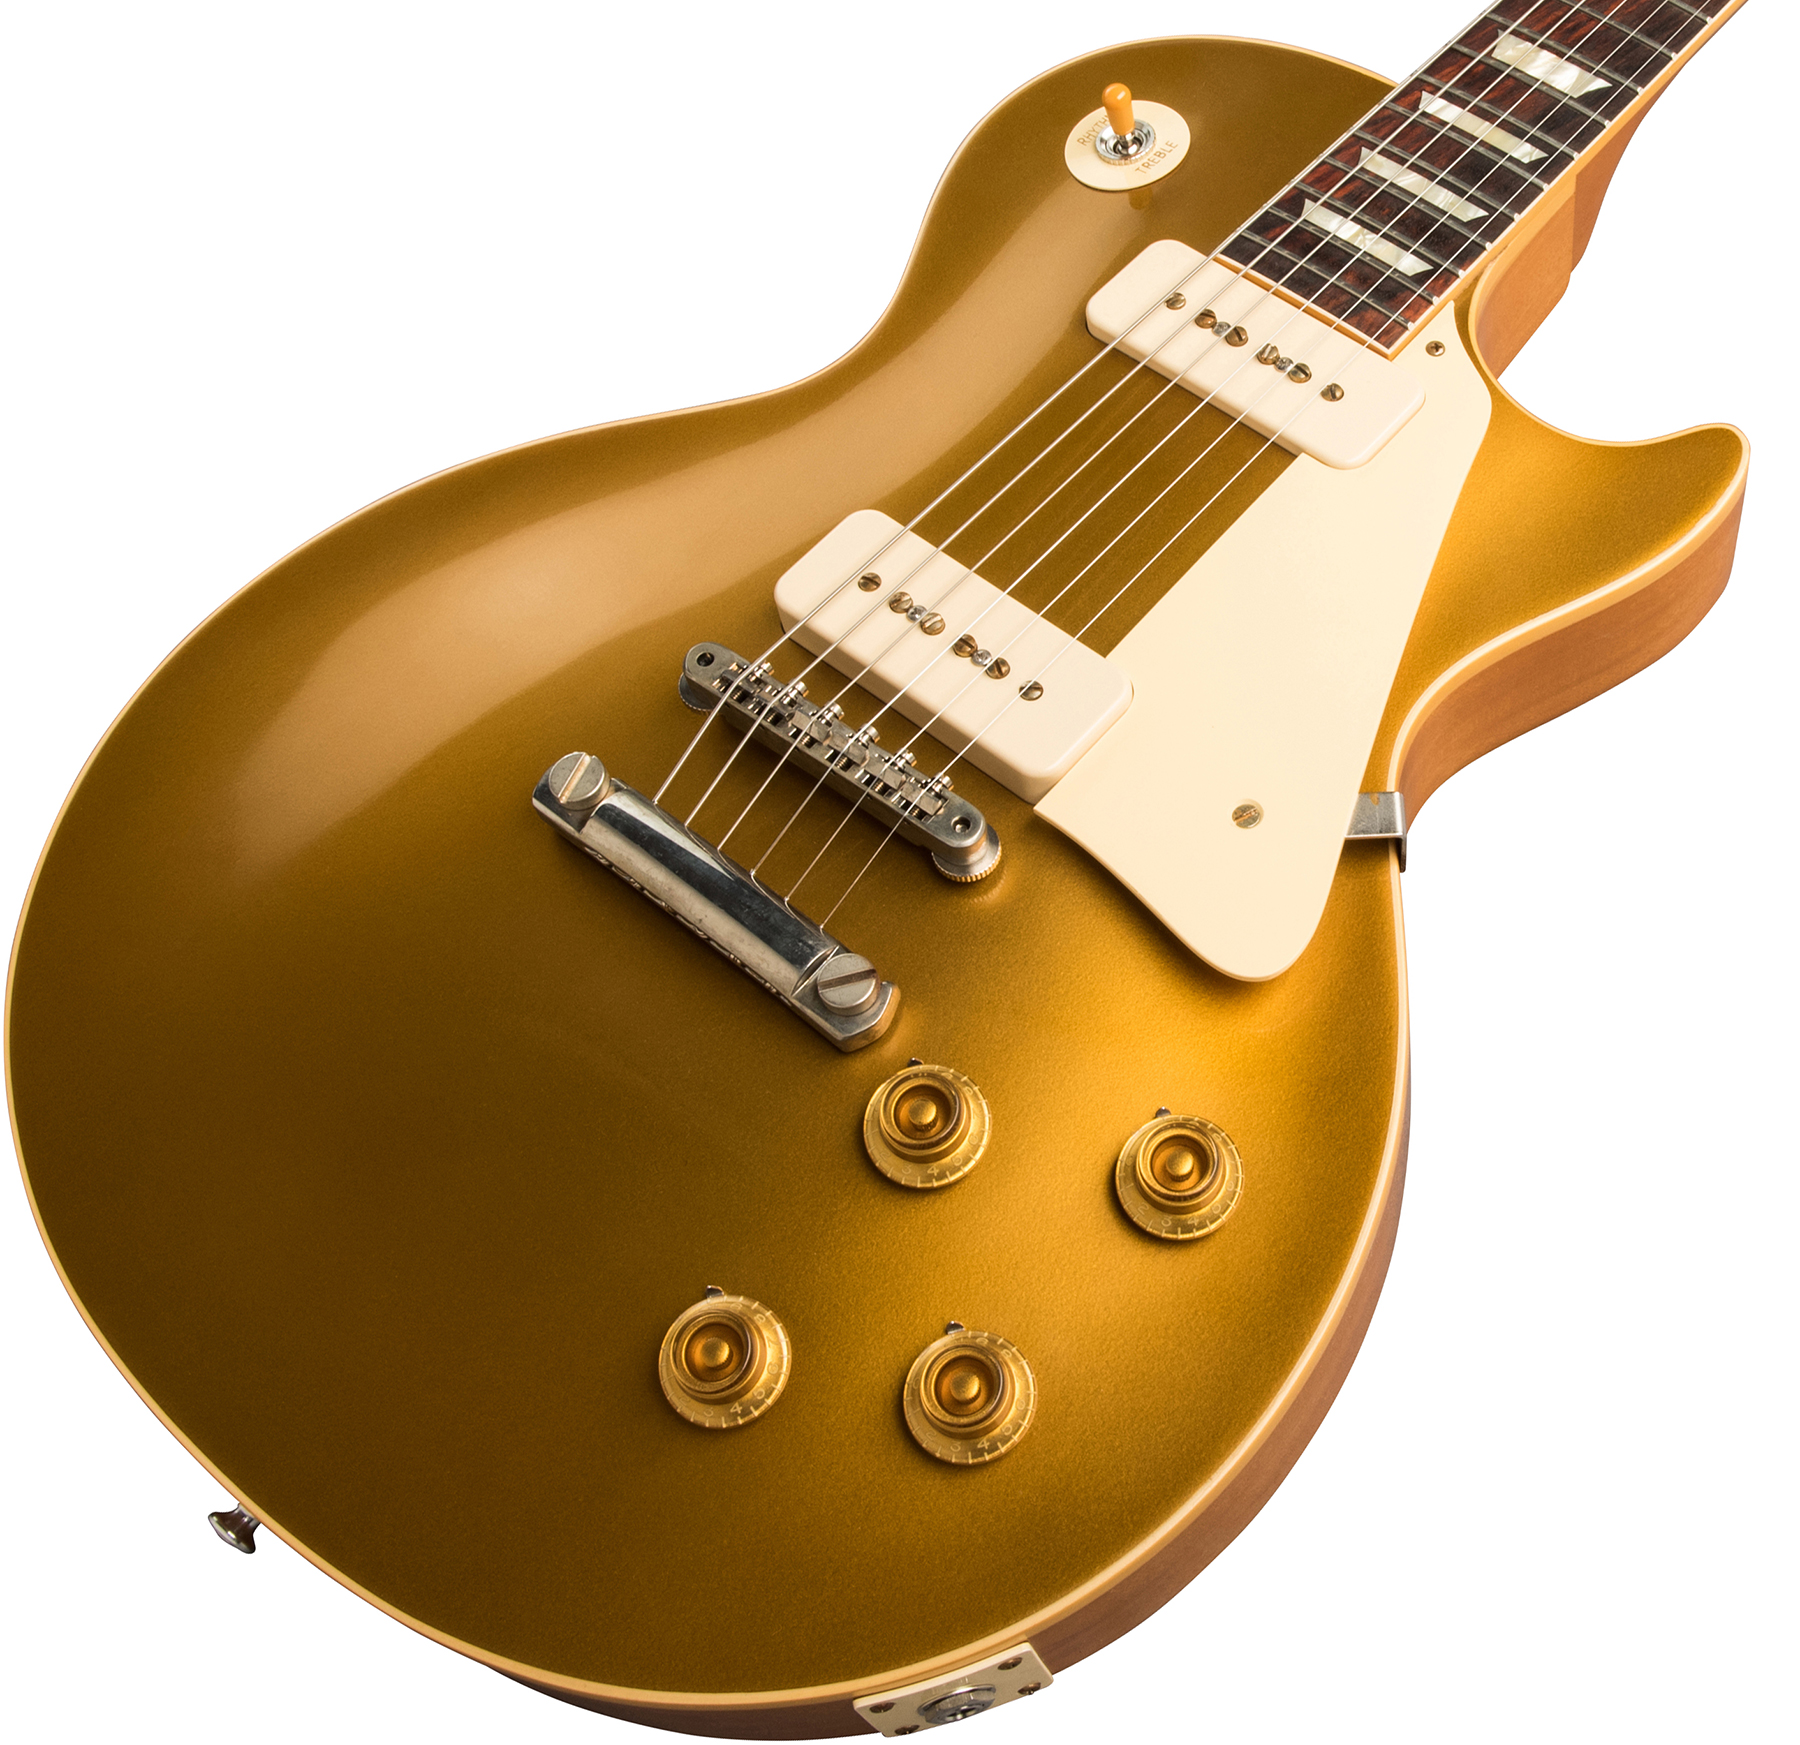 Gibson Custom Shop Les Paul Goldtop 1956 Reissue 2019 2p90 Ht Rw - Vos Double Gold - Single-Cut-E-Gitarre - Variation 3